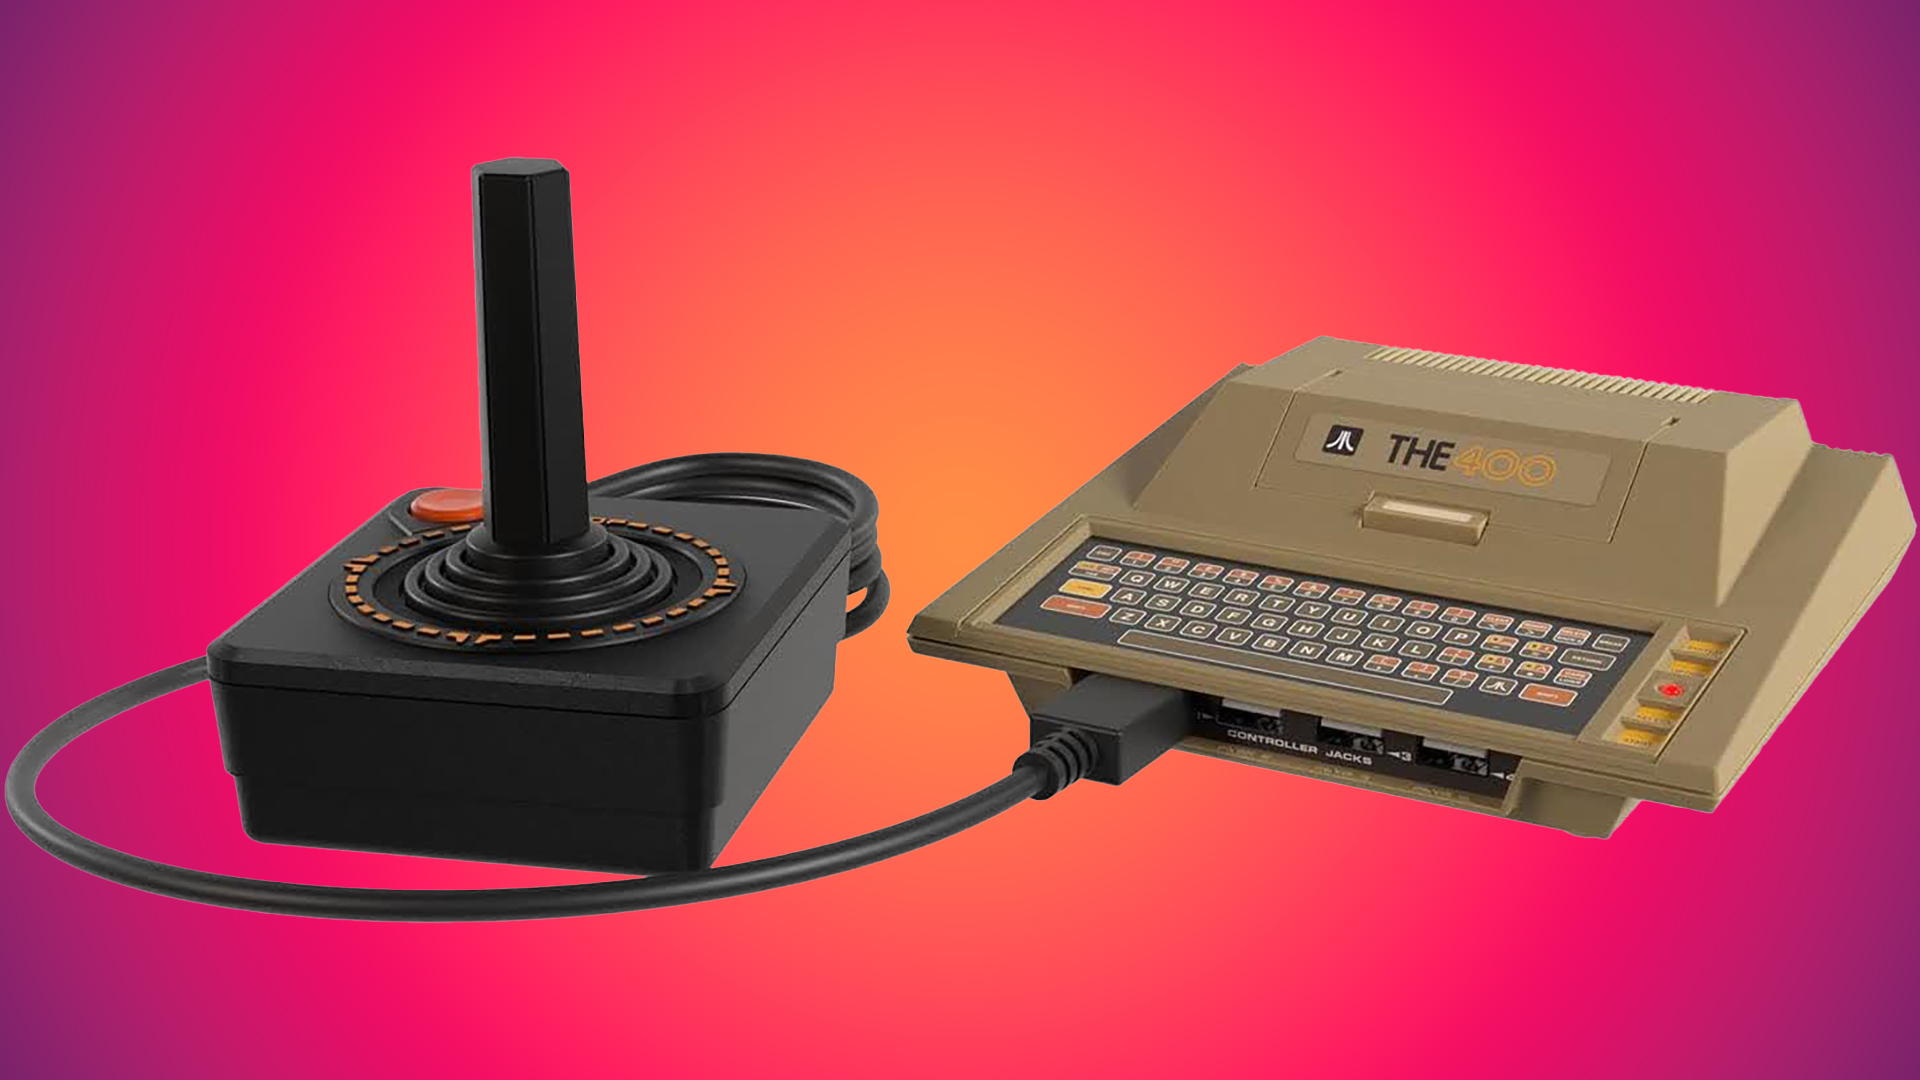 THEA500 Mini (Commodore Amiga 500) Console Retro Games Ltd 